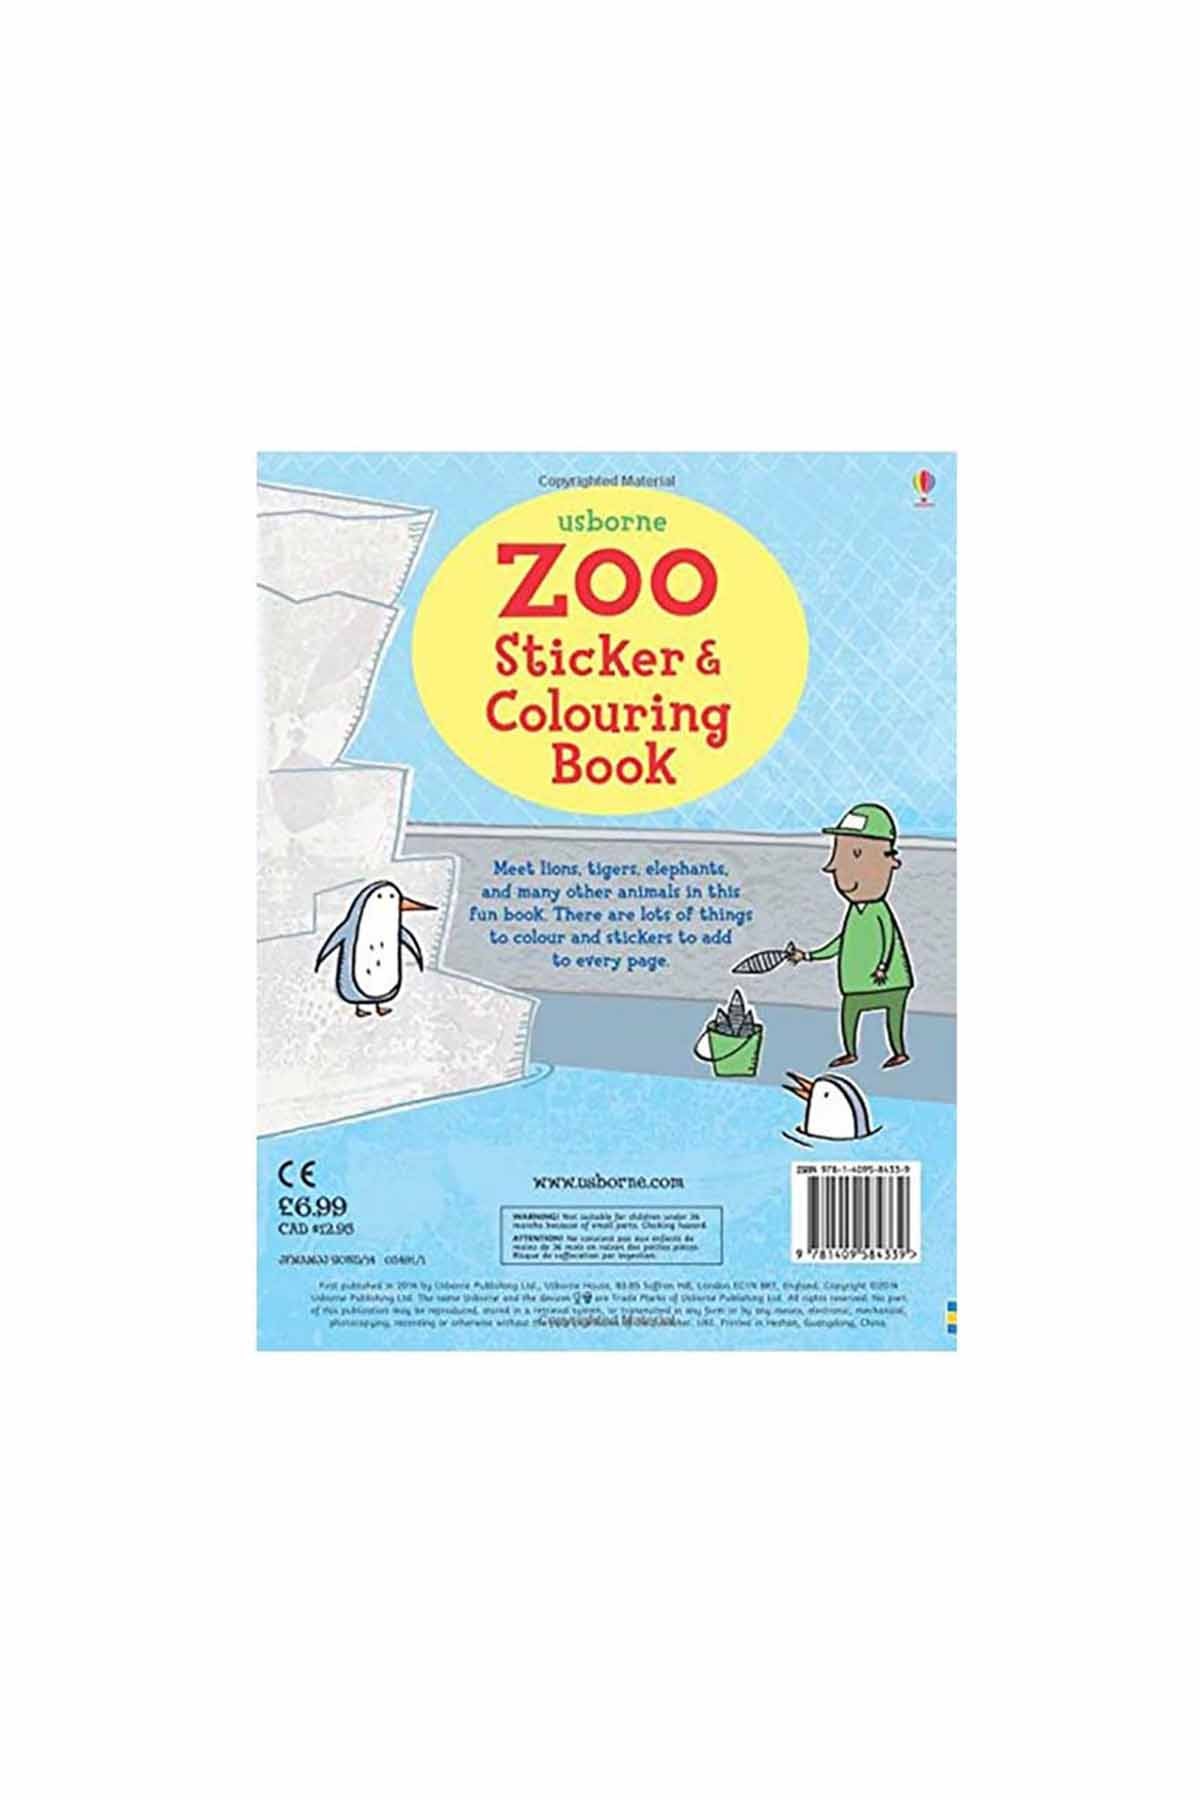 The Usborne Zoo Sticker & Colouring Book